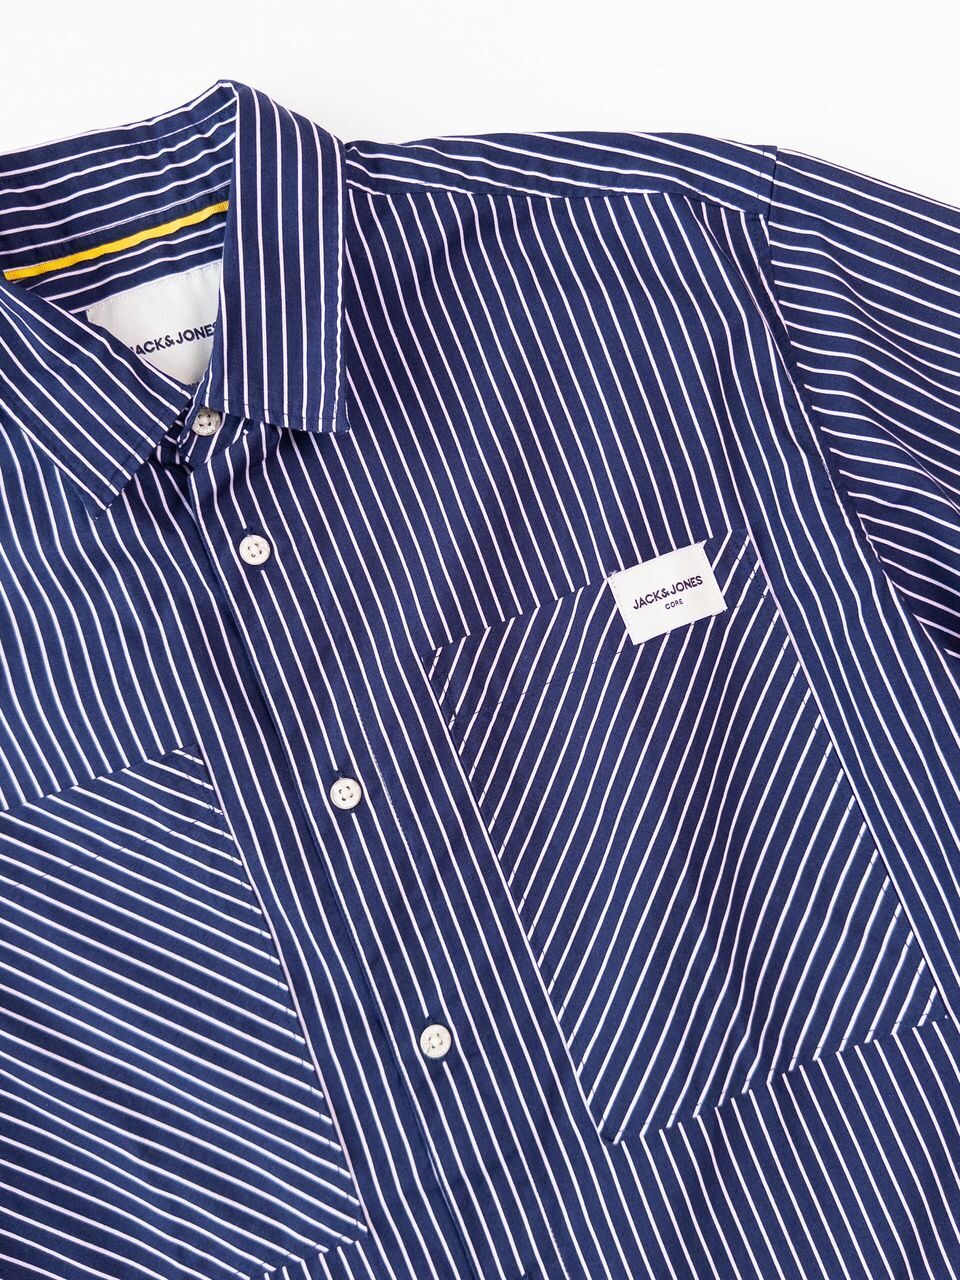 Рубашка мужская на пуговицах цвет темно-синий/полоска размер М Jack&Jones